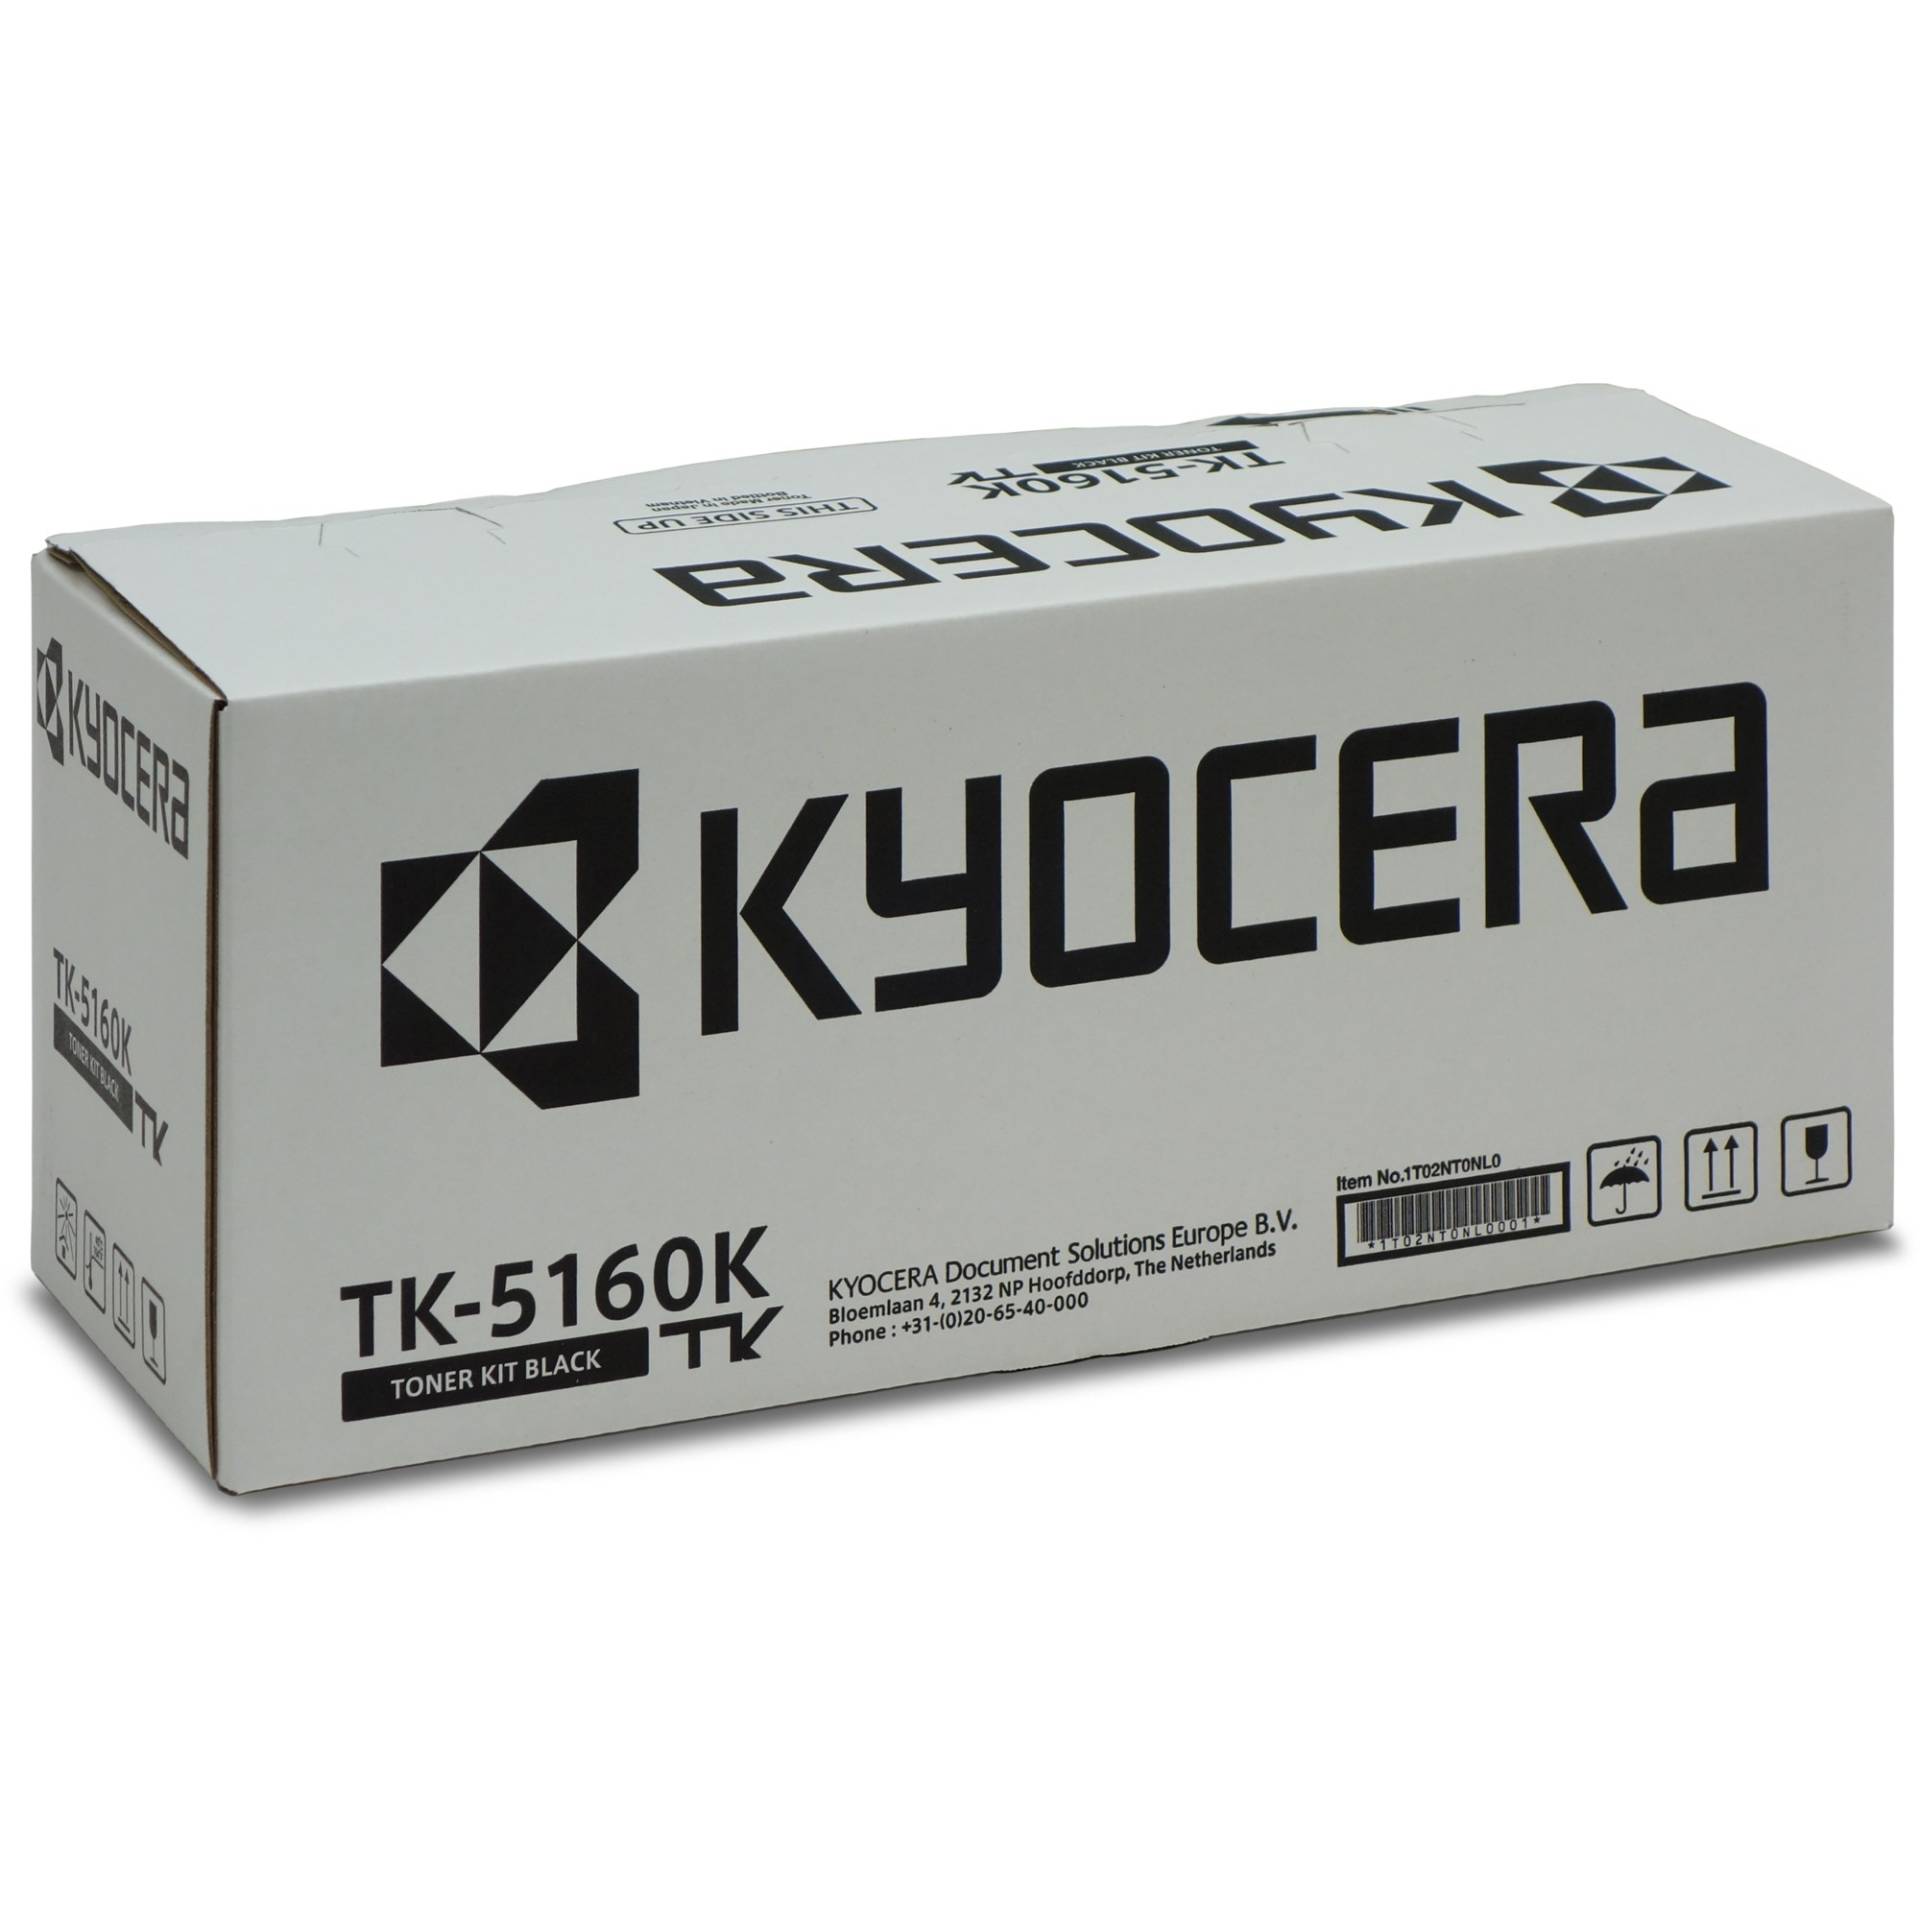 Toner schwarz TK-5160K von Kyocera